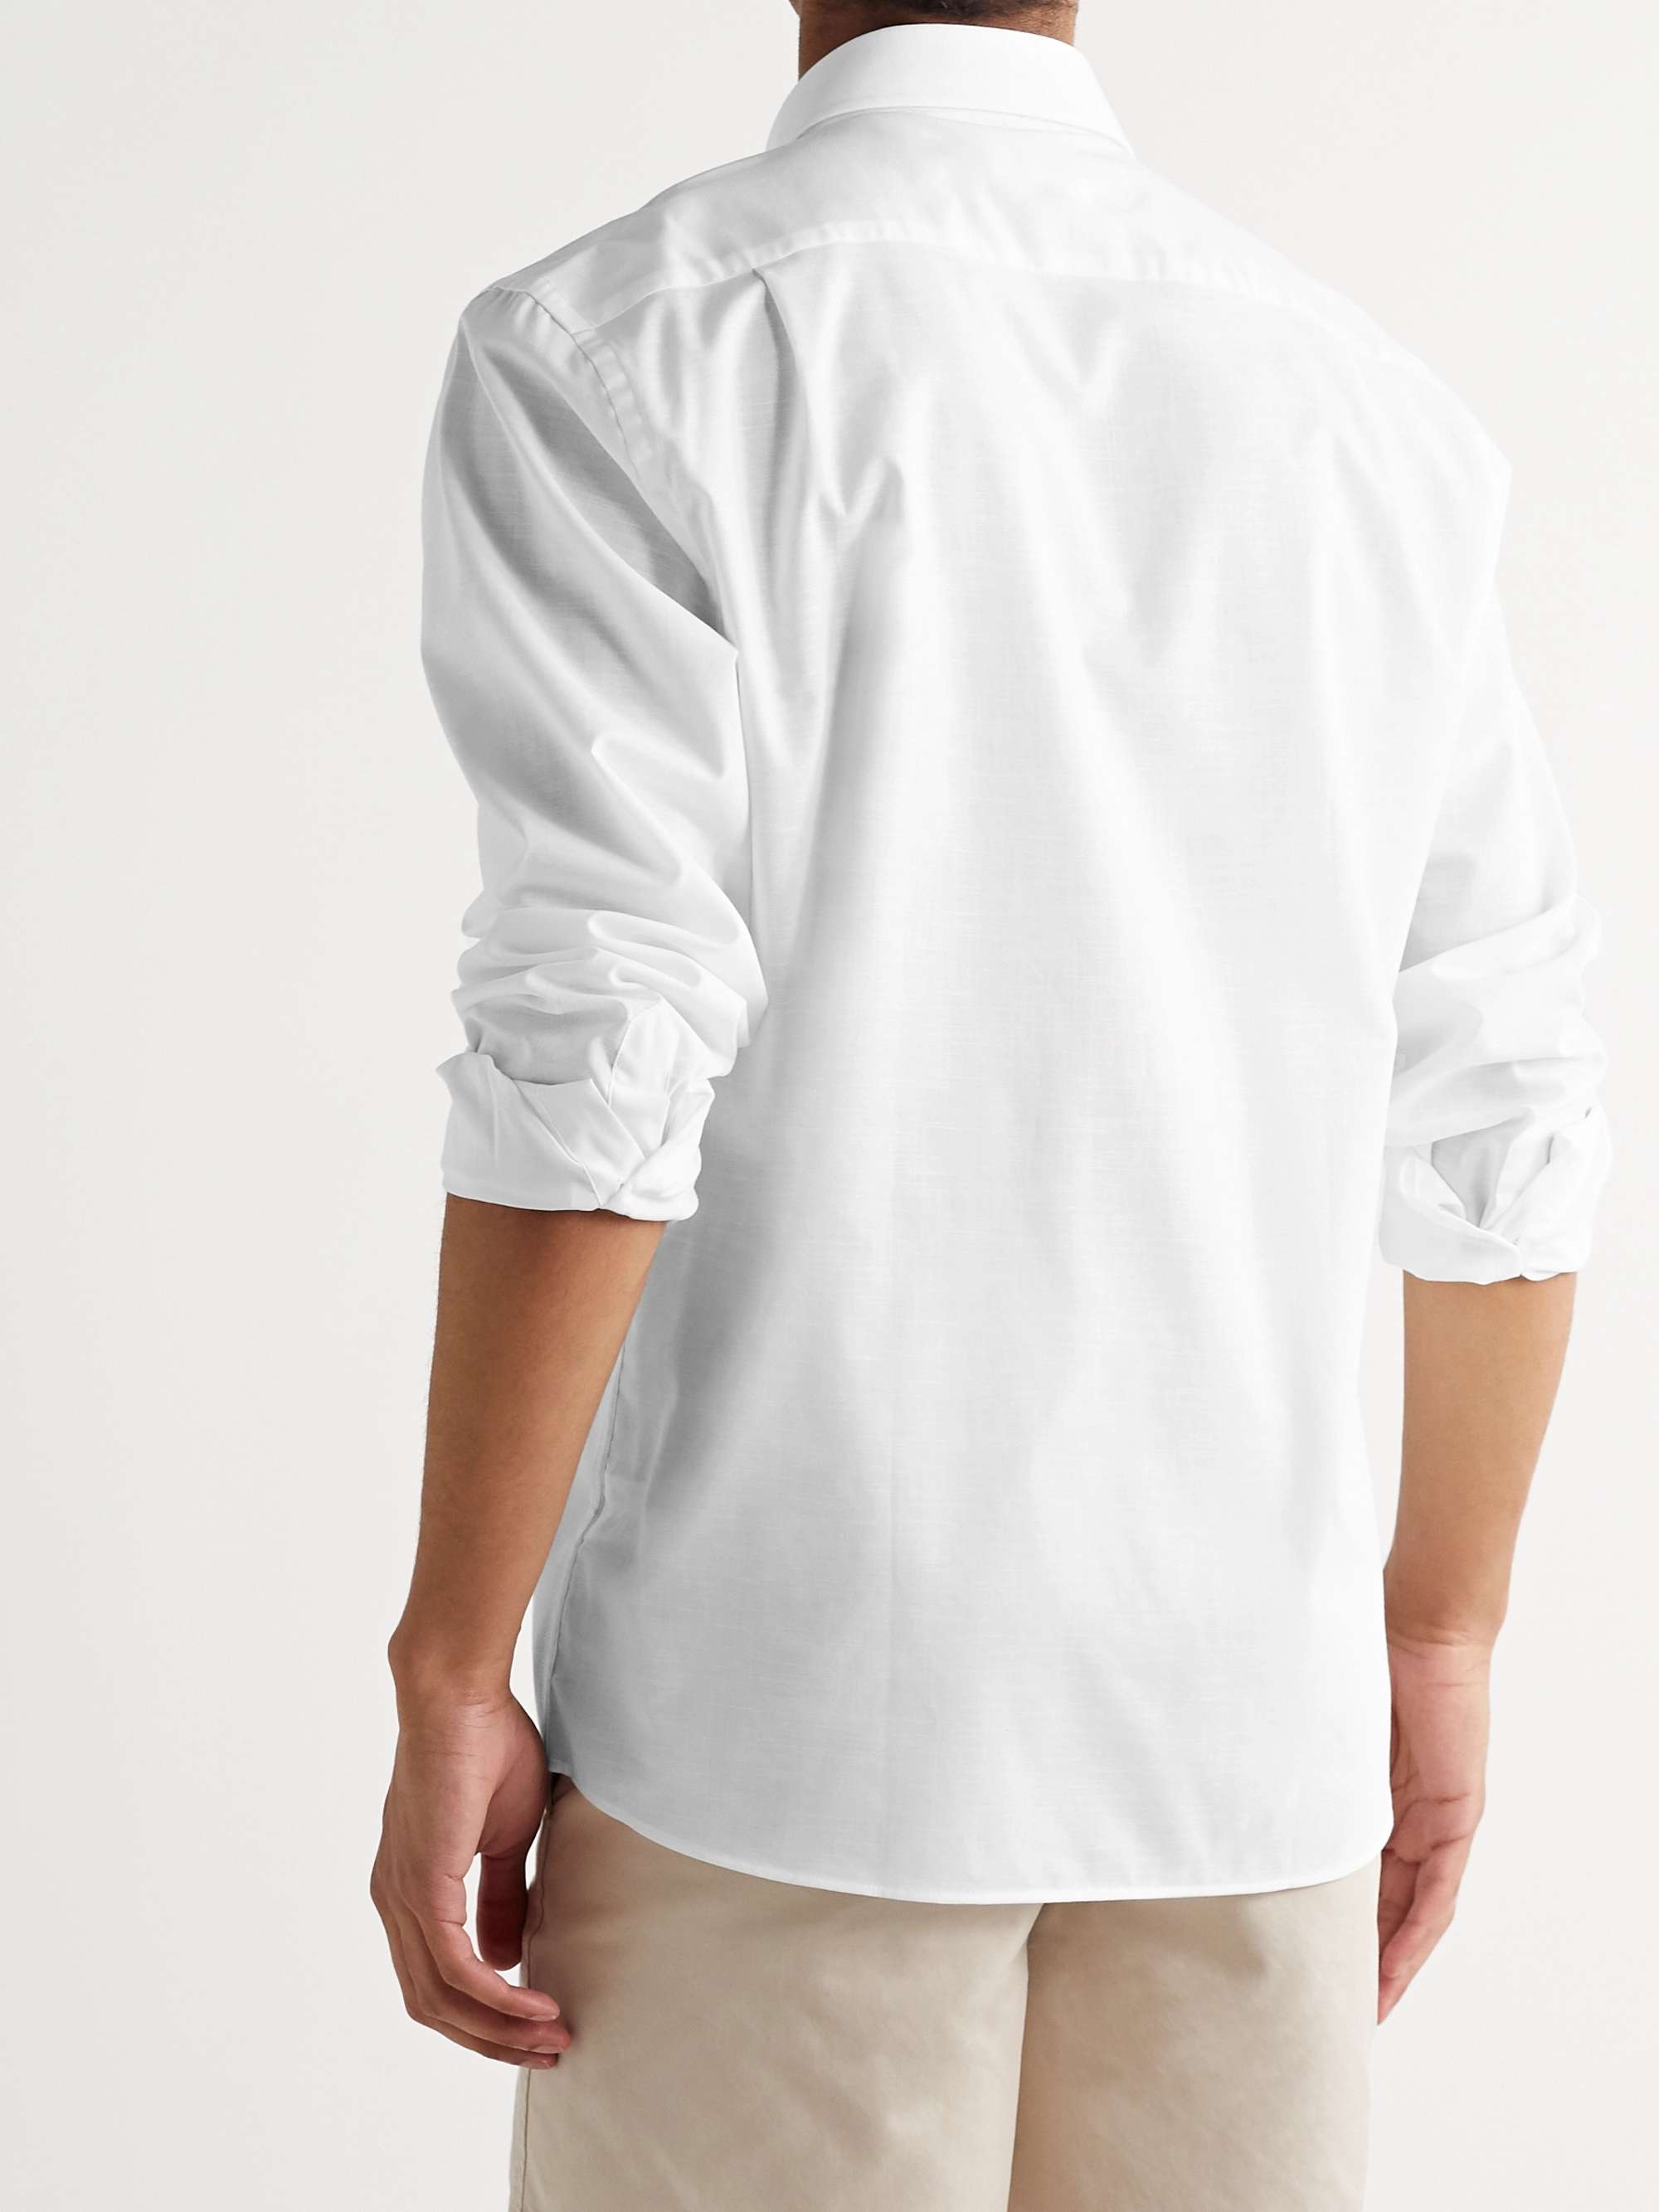 PETER MILLAR Summer Button-Down Collar Cotton Shirt